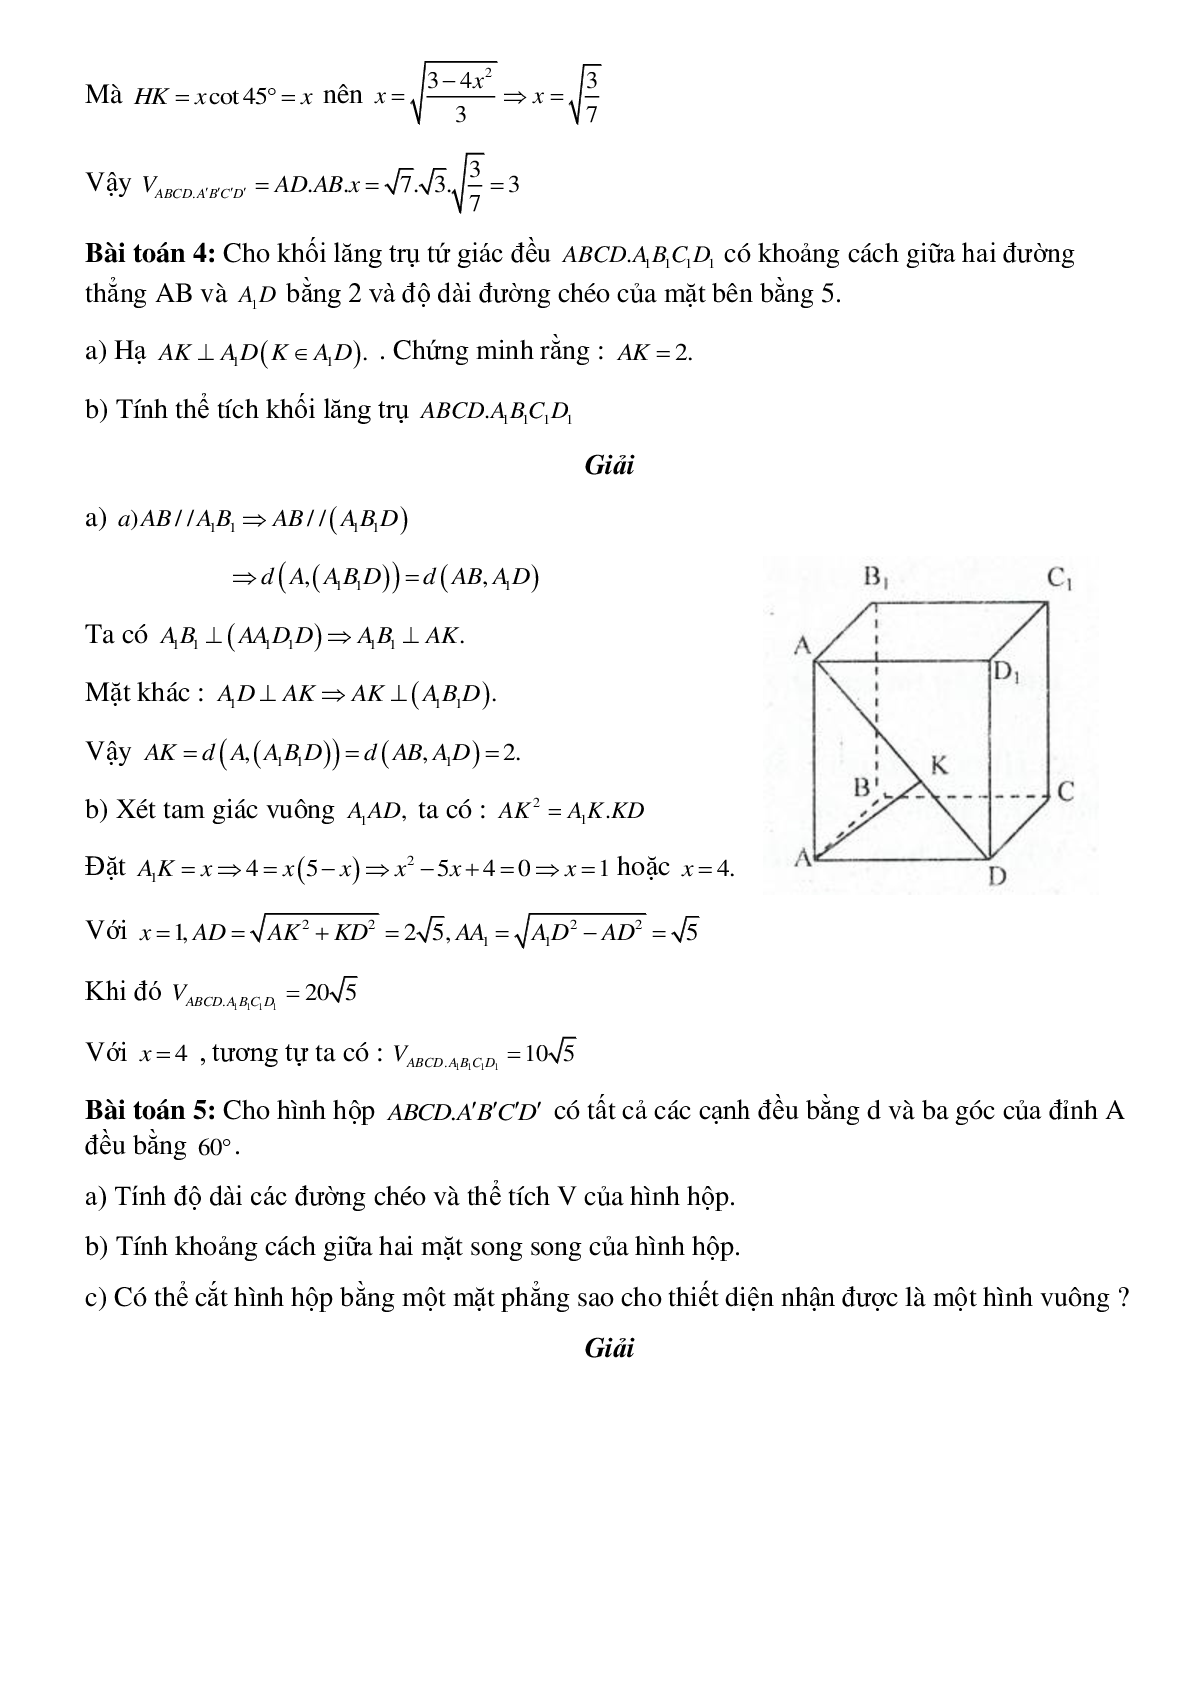 Dạng bài tập Thể tích khối hộp (trang 3)